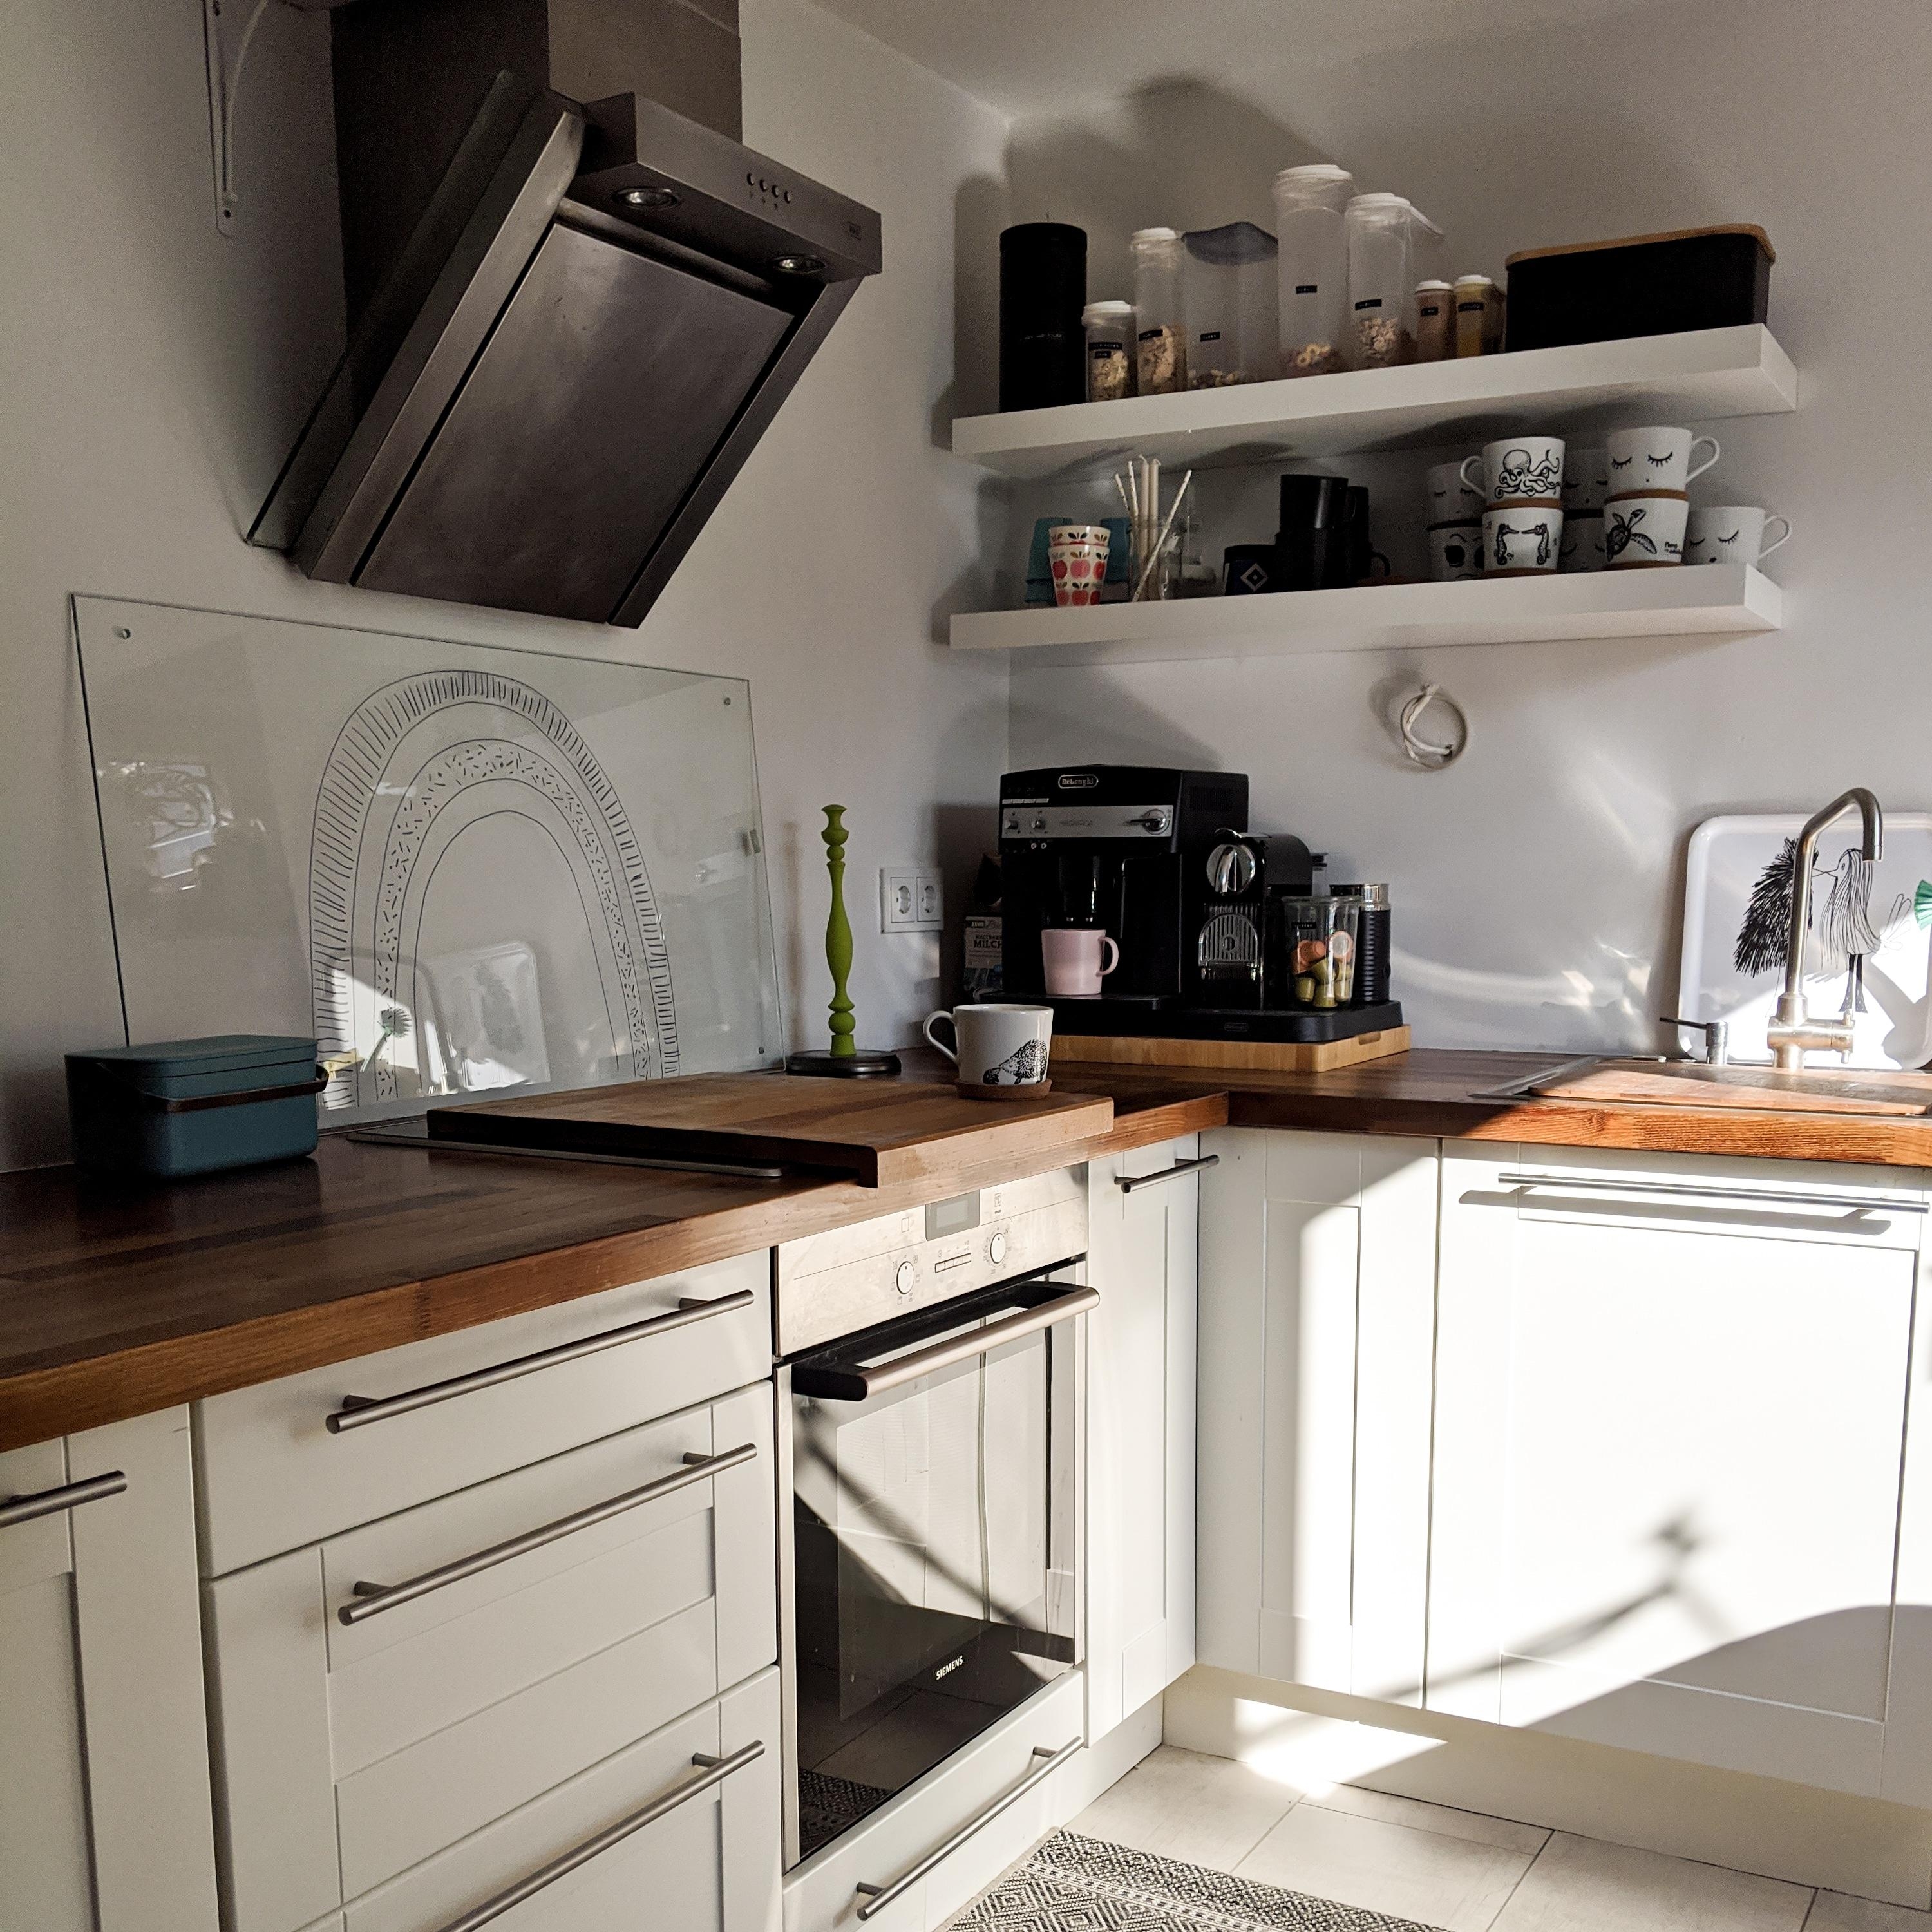 Unsere frisch renovierte Küche

#sonnenstrahlen #küchenliebe #küche #renovieren 